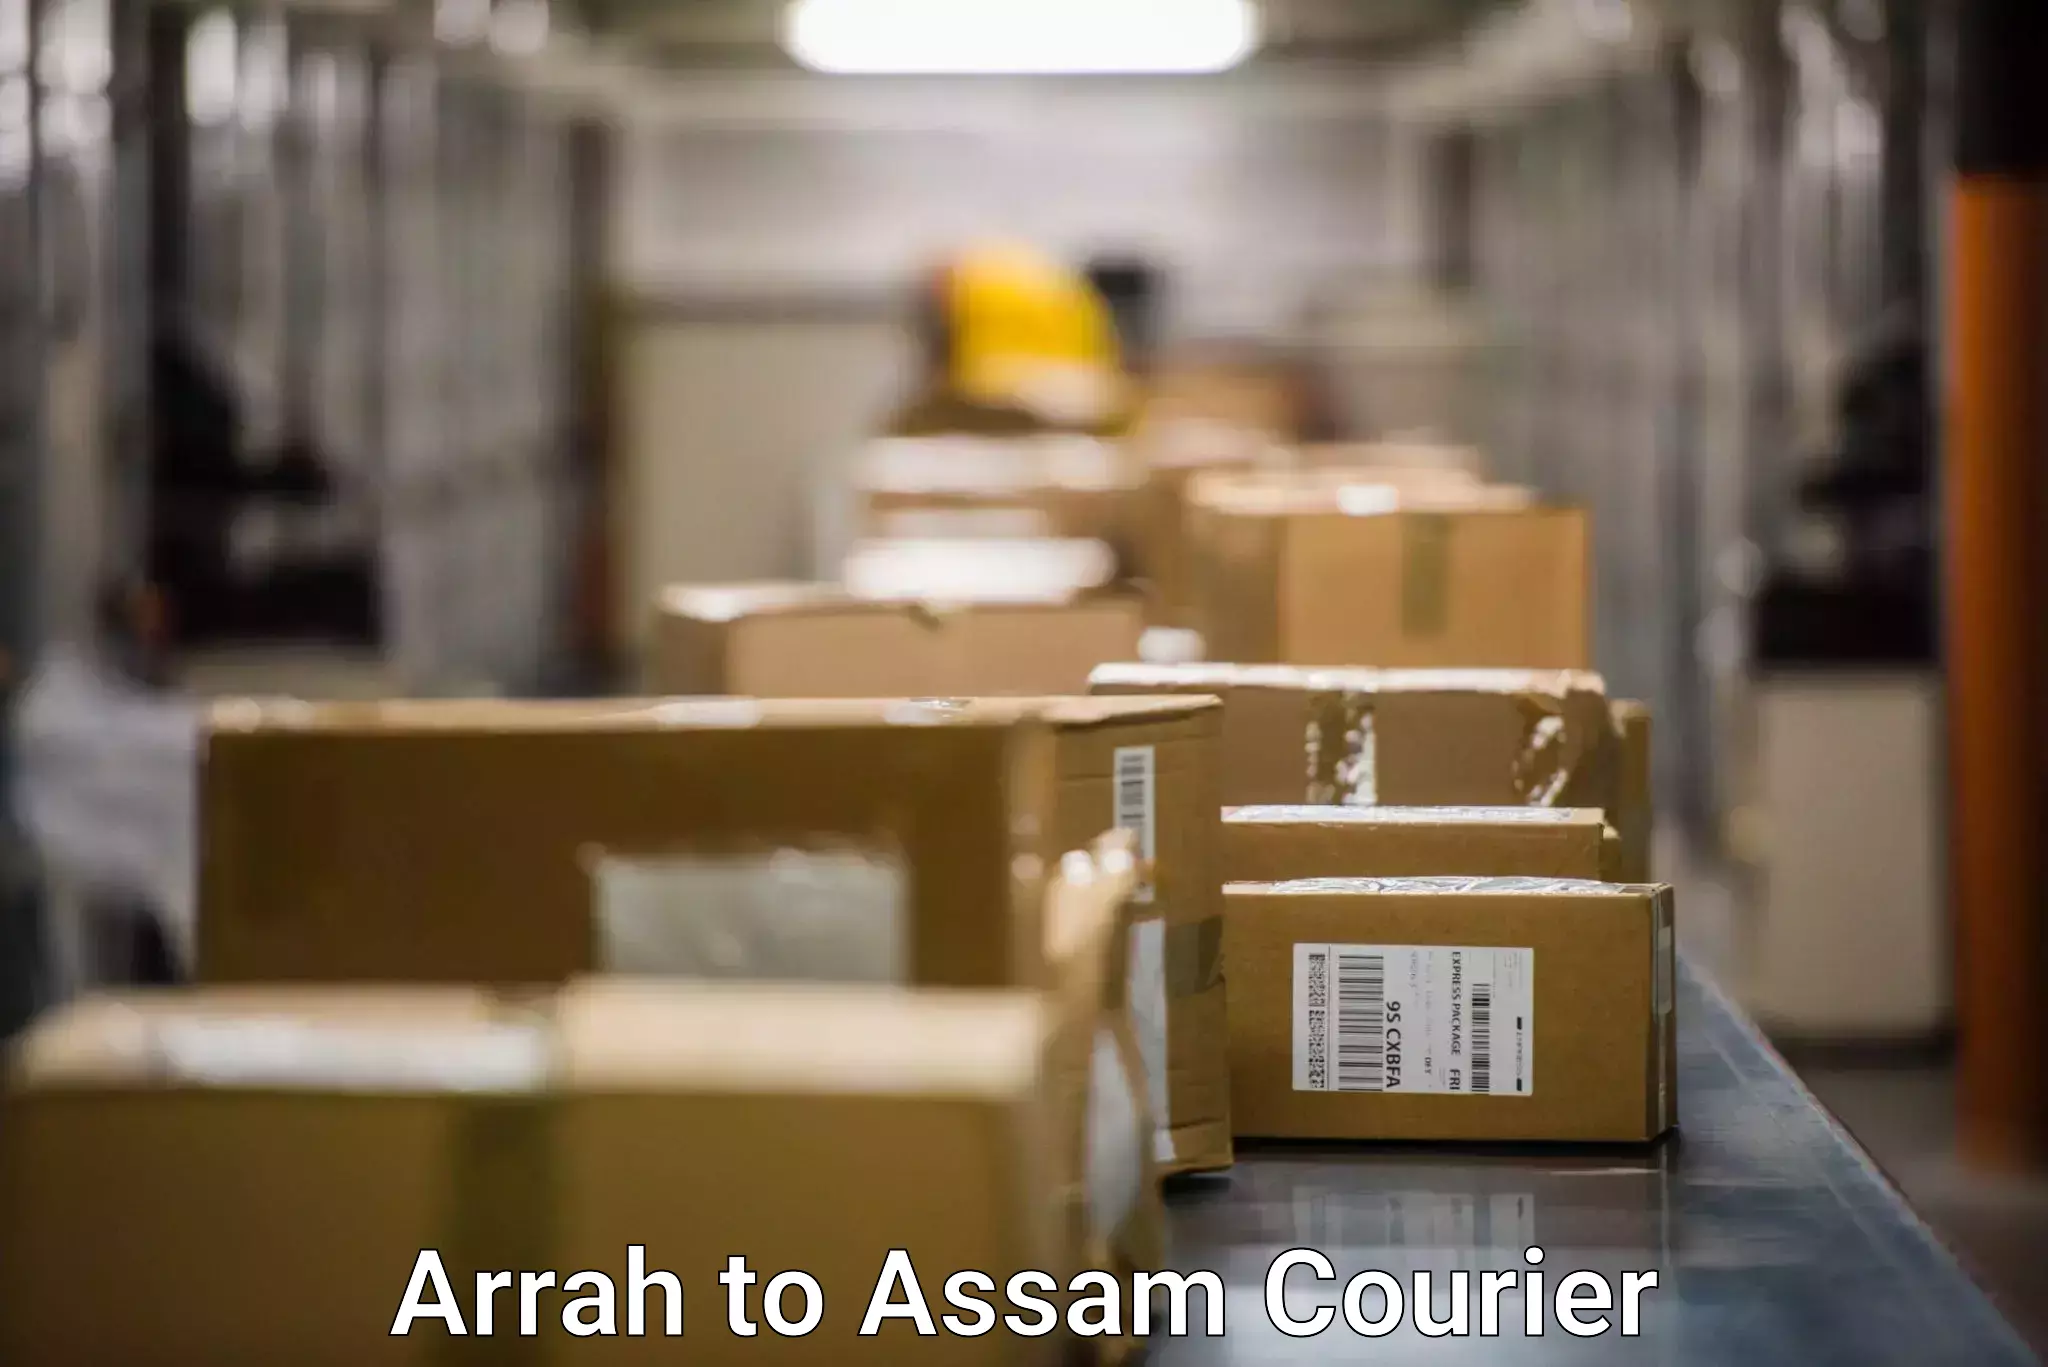 Flexible shipping options Arrah to Dhupdhara